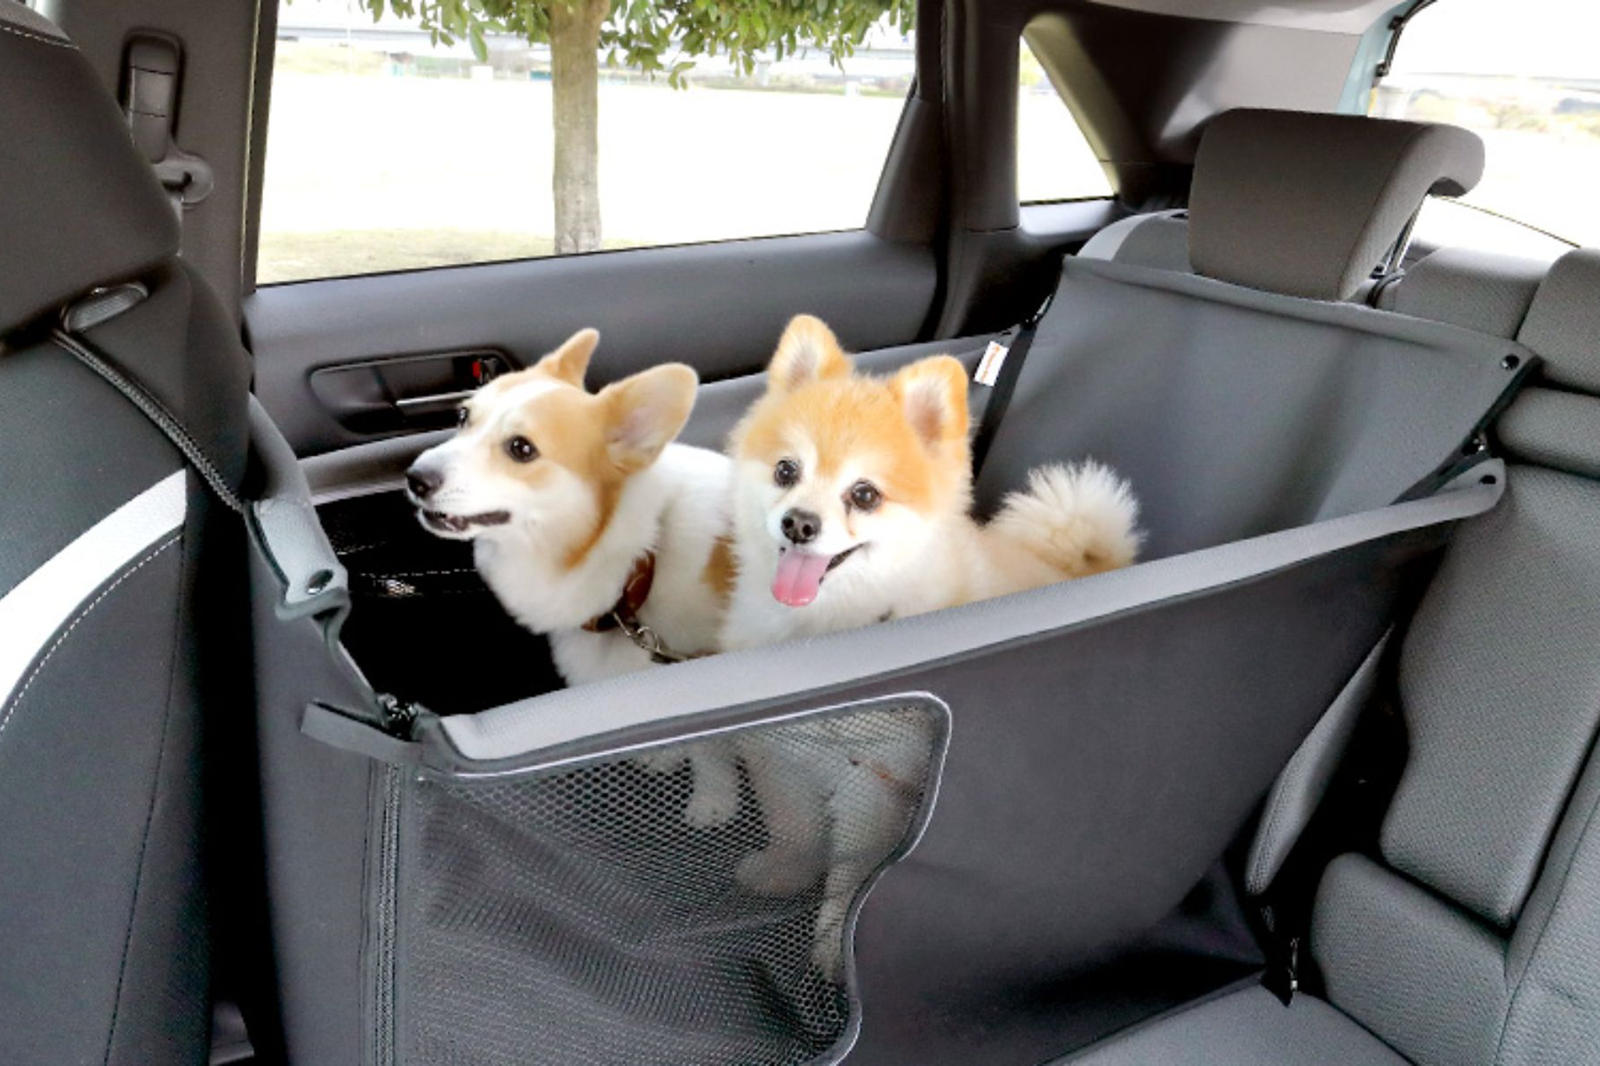 Honda также предоставляет точные размеры проемов дверей и дверей багажника, чтобы владельцы могли принимать решение о покупке исключительно на основании того, смогут ли их собаки с легкостью садиться в машину и выходить из нее.